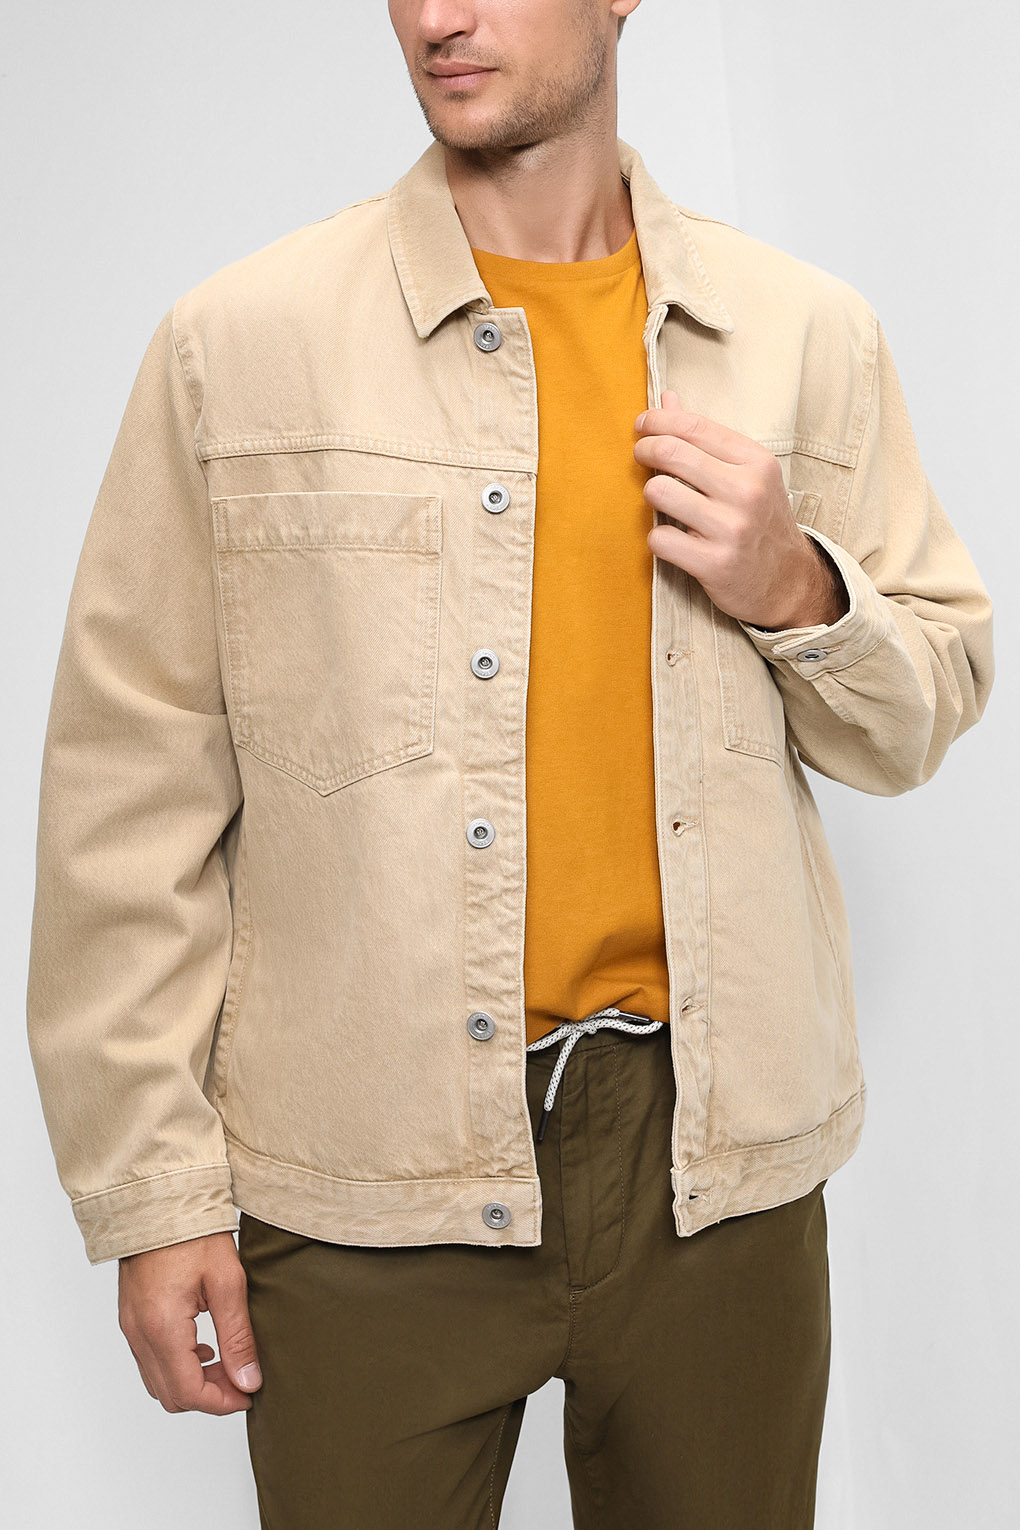 Джинсовая куртка мужская Esprit Casual 022EE2G301 бежевая XL